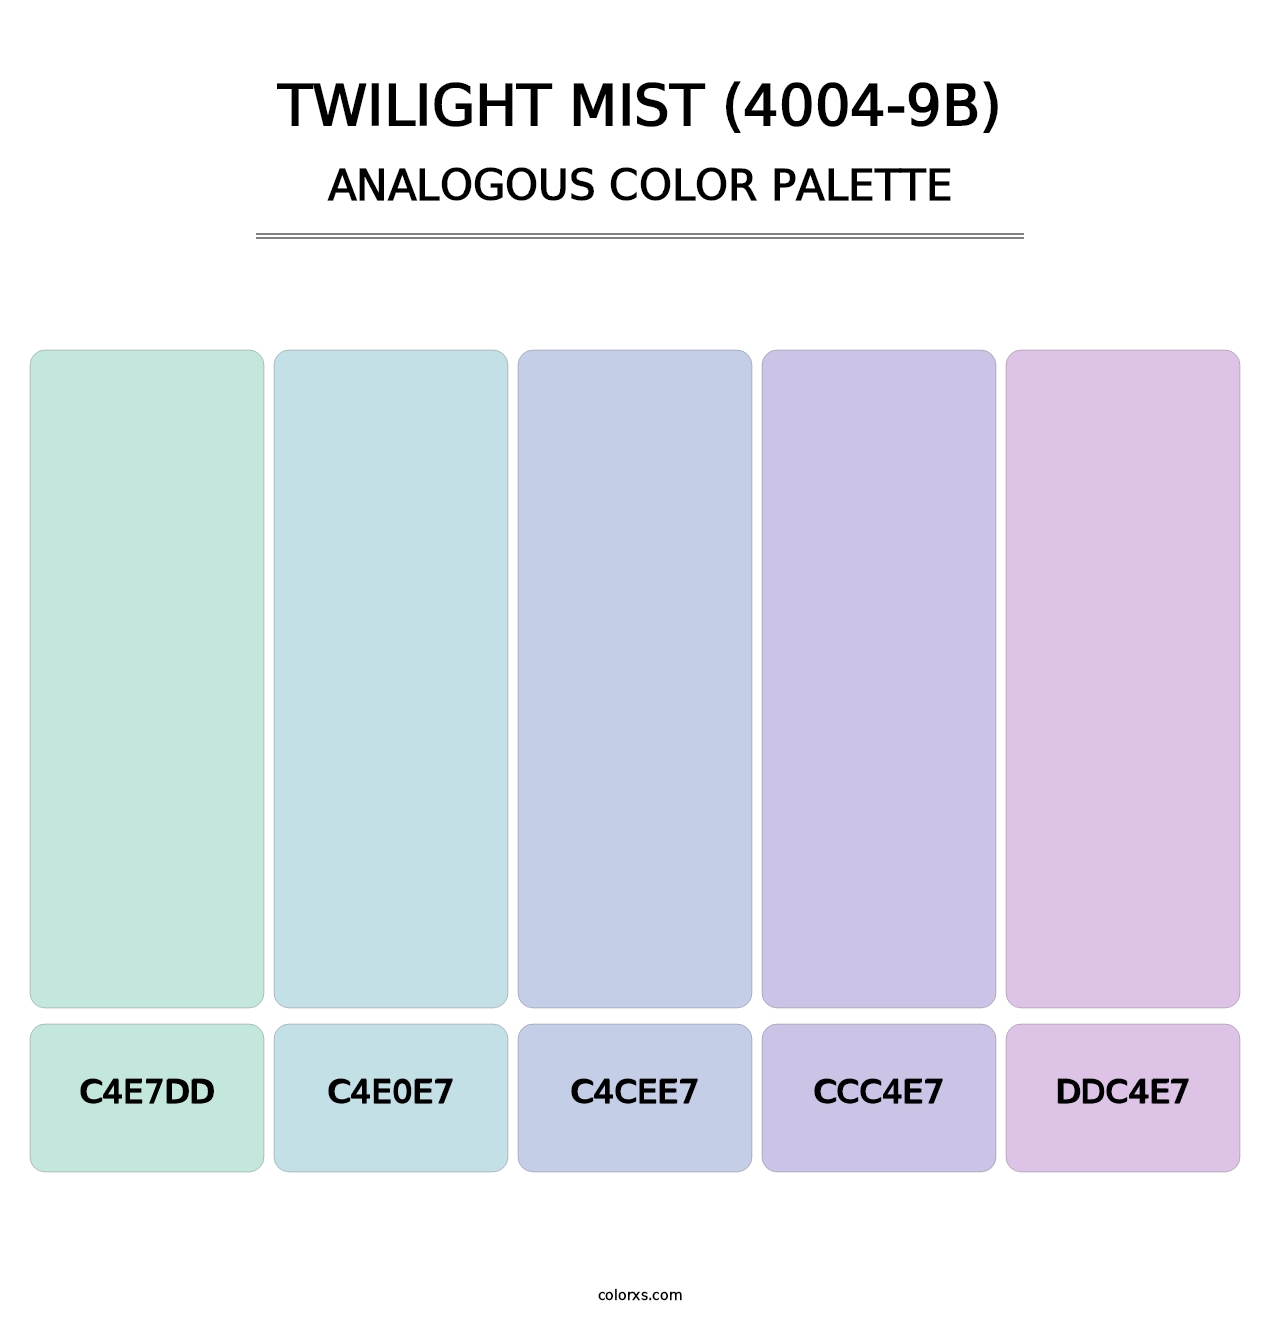 Twilight Mist (4004-9B) - Analogous Color Palette